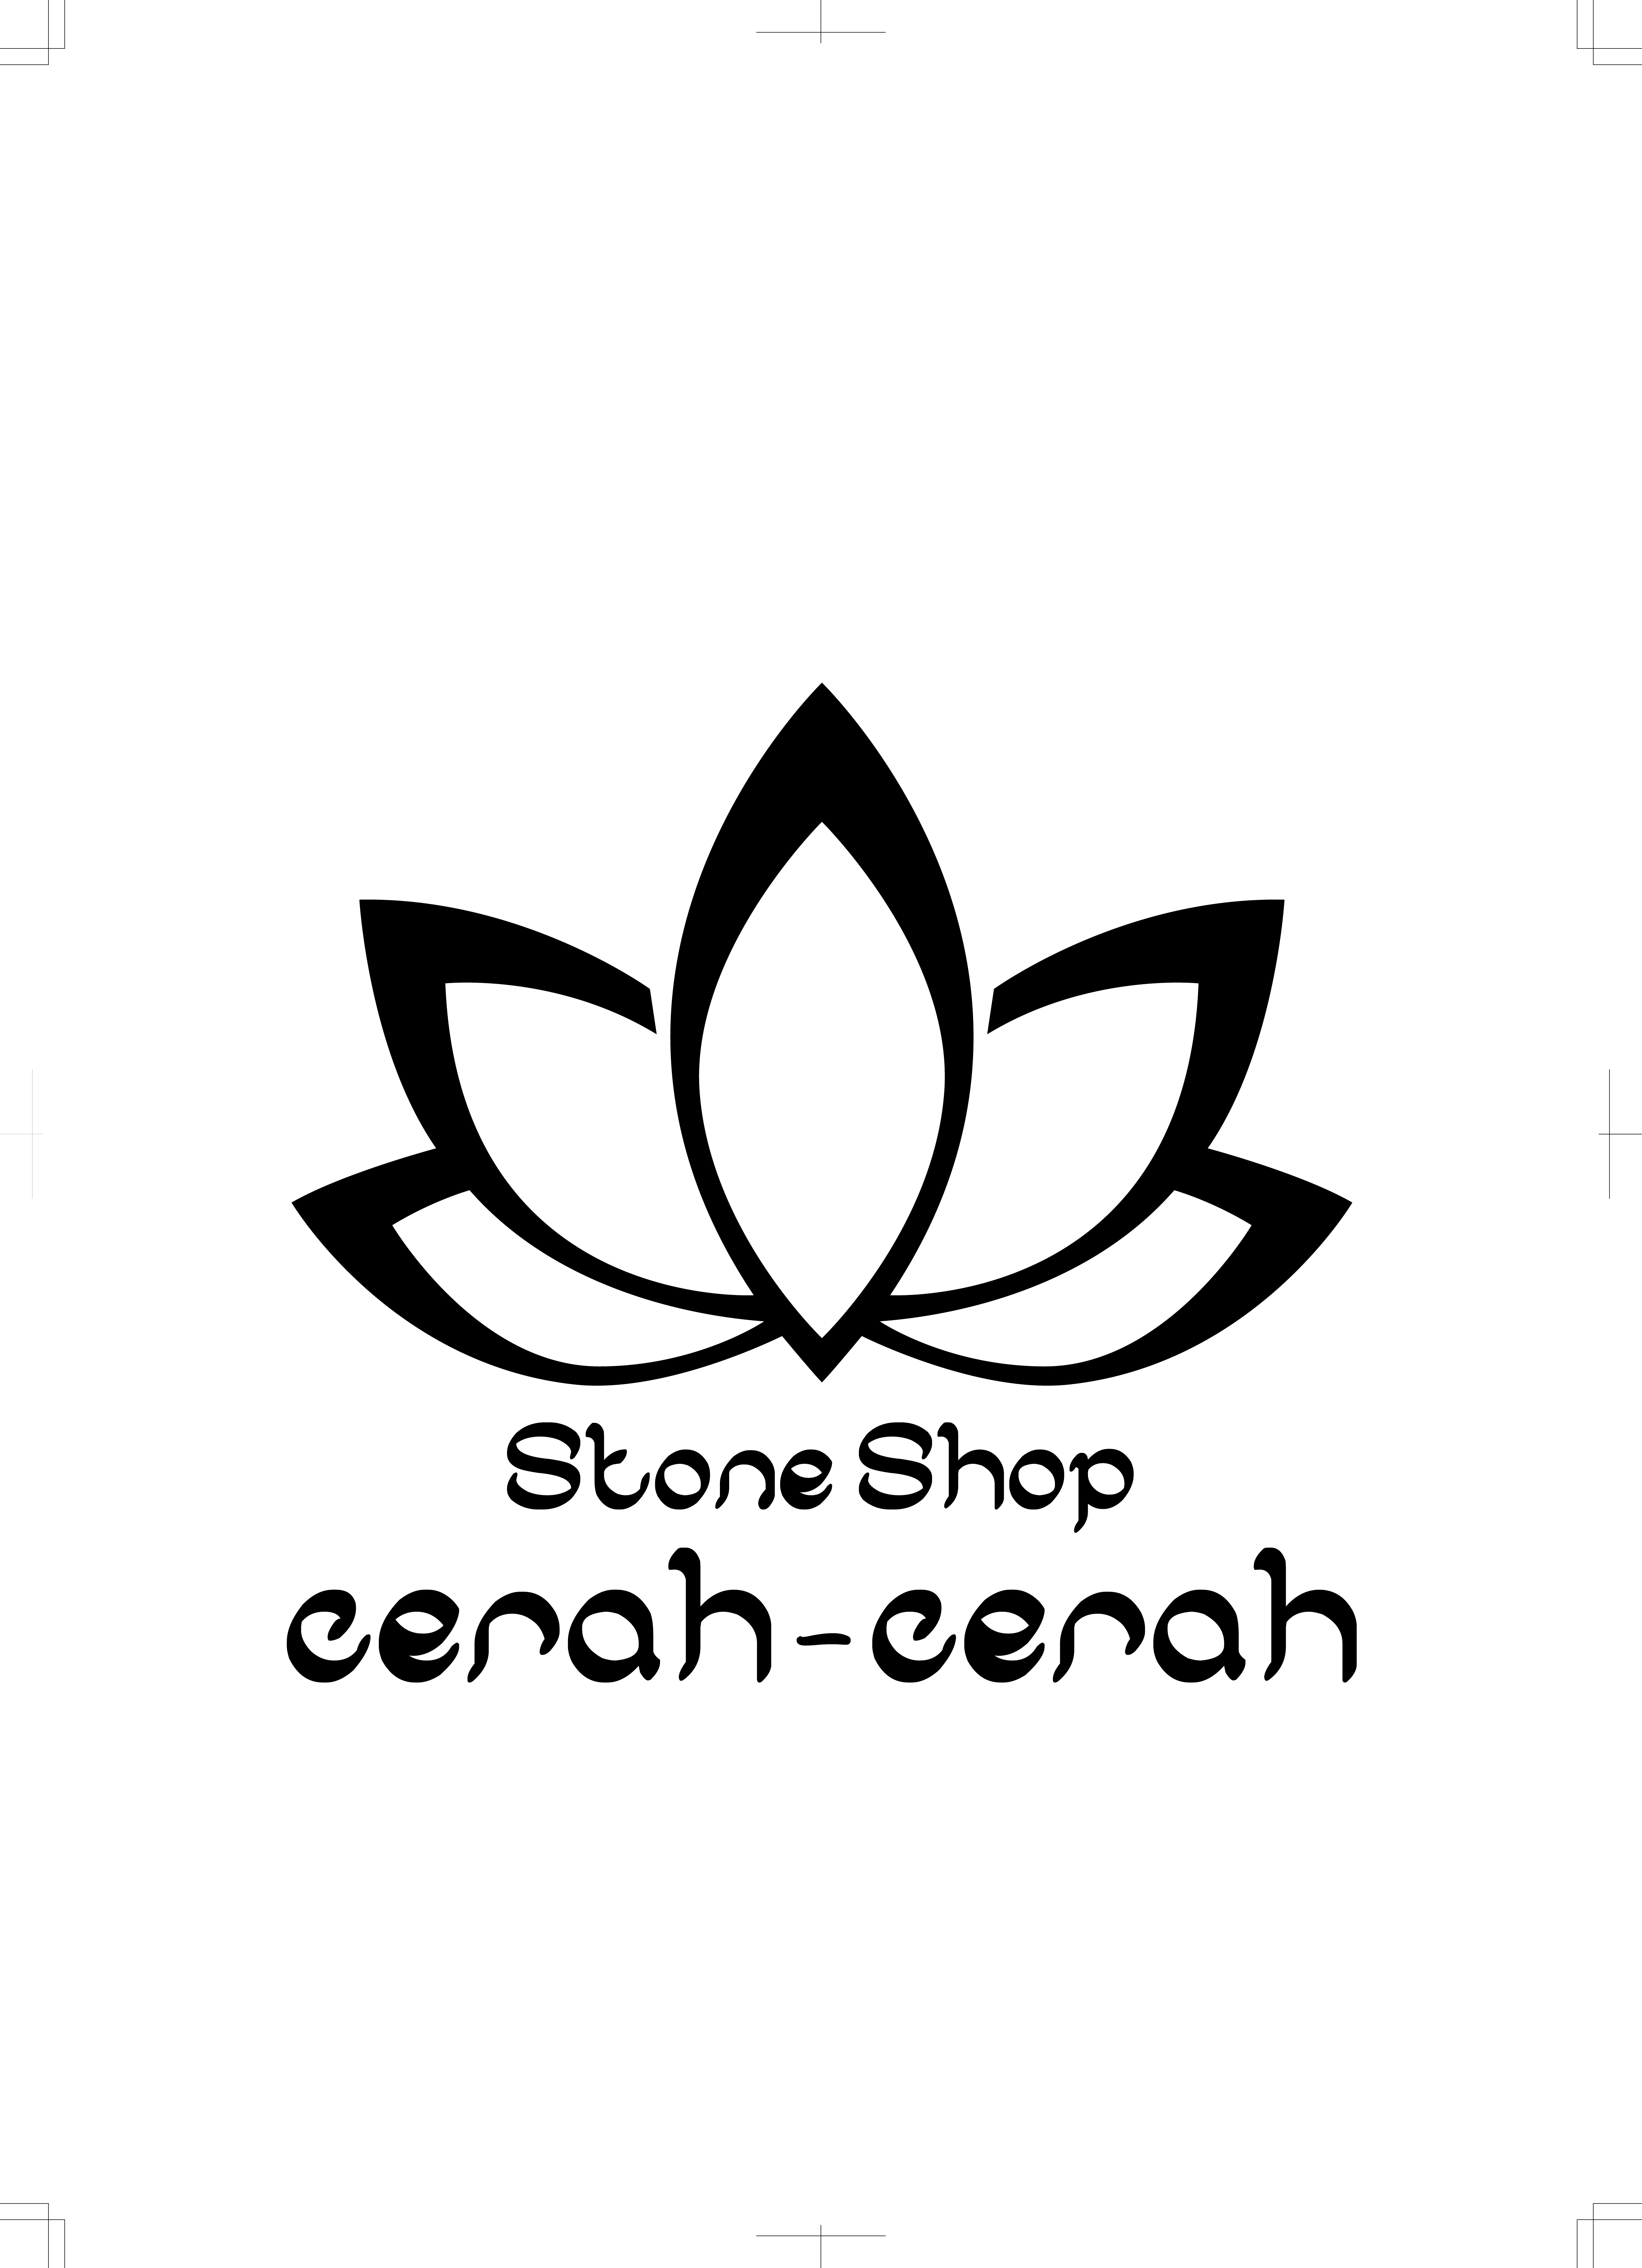 Stone shop  cerah-cerah